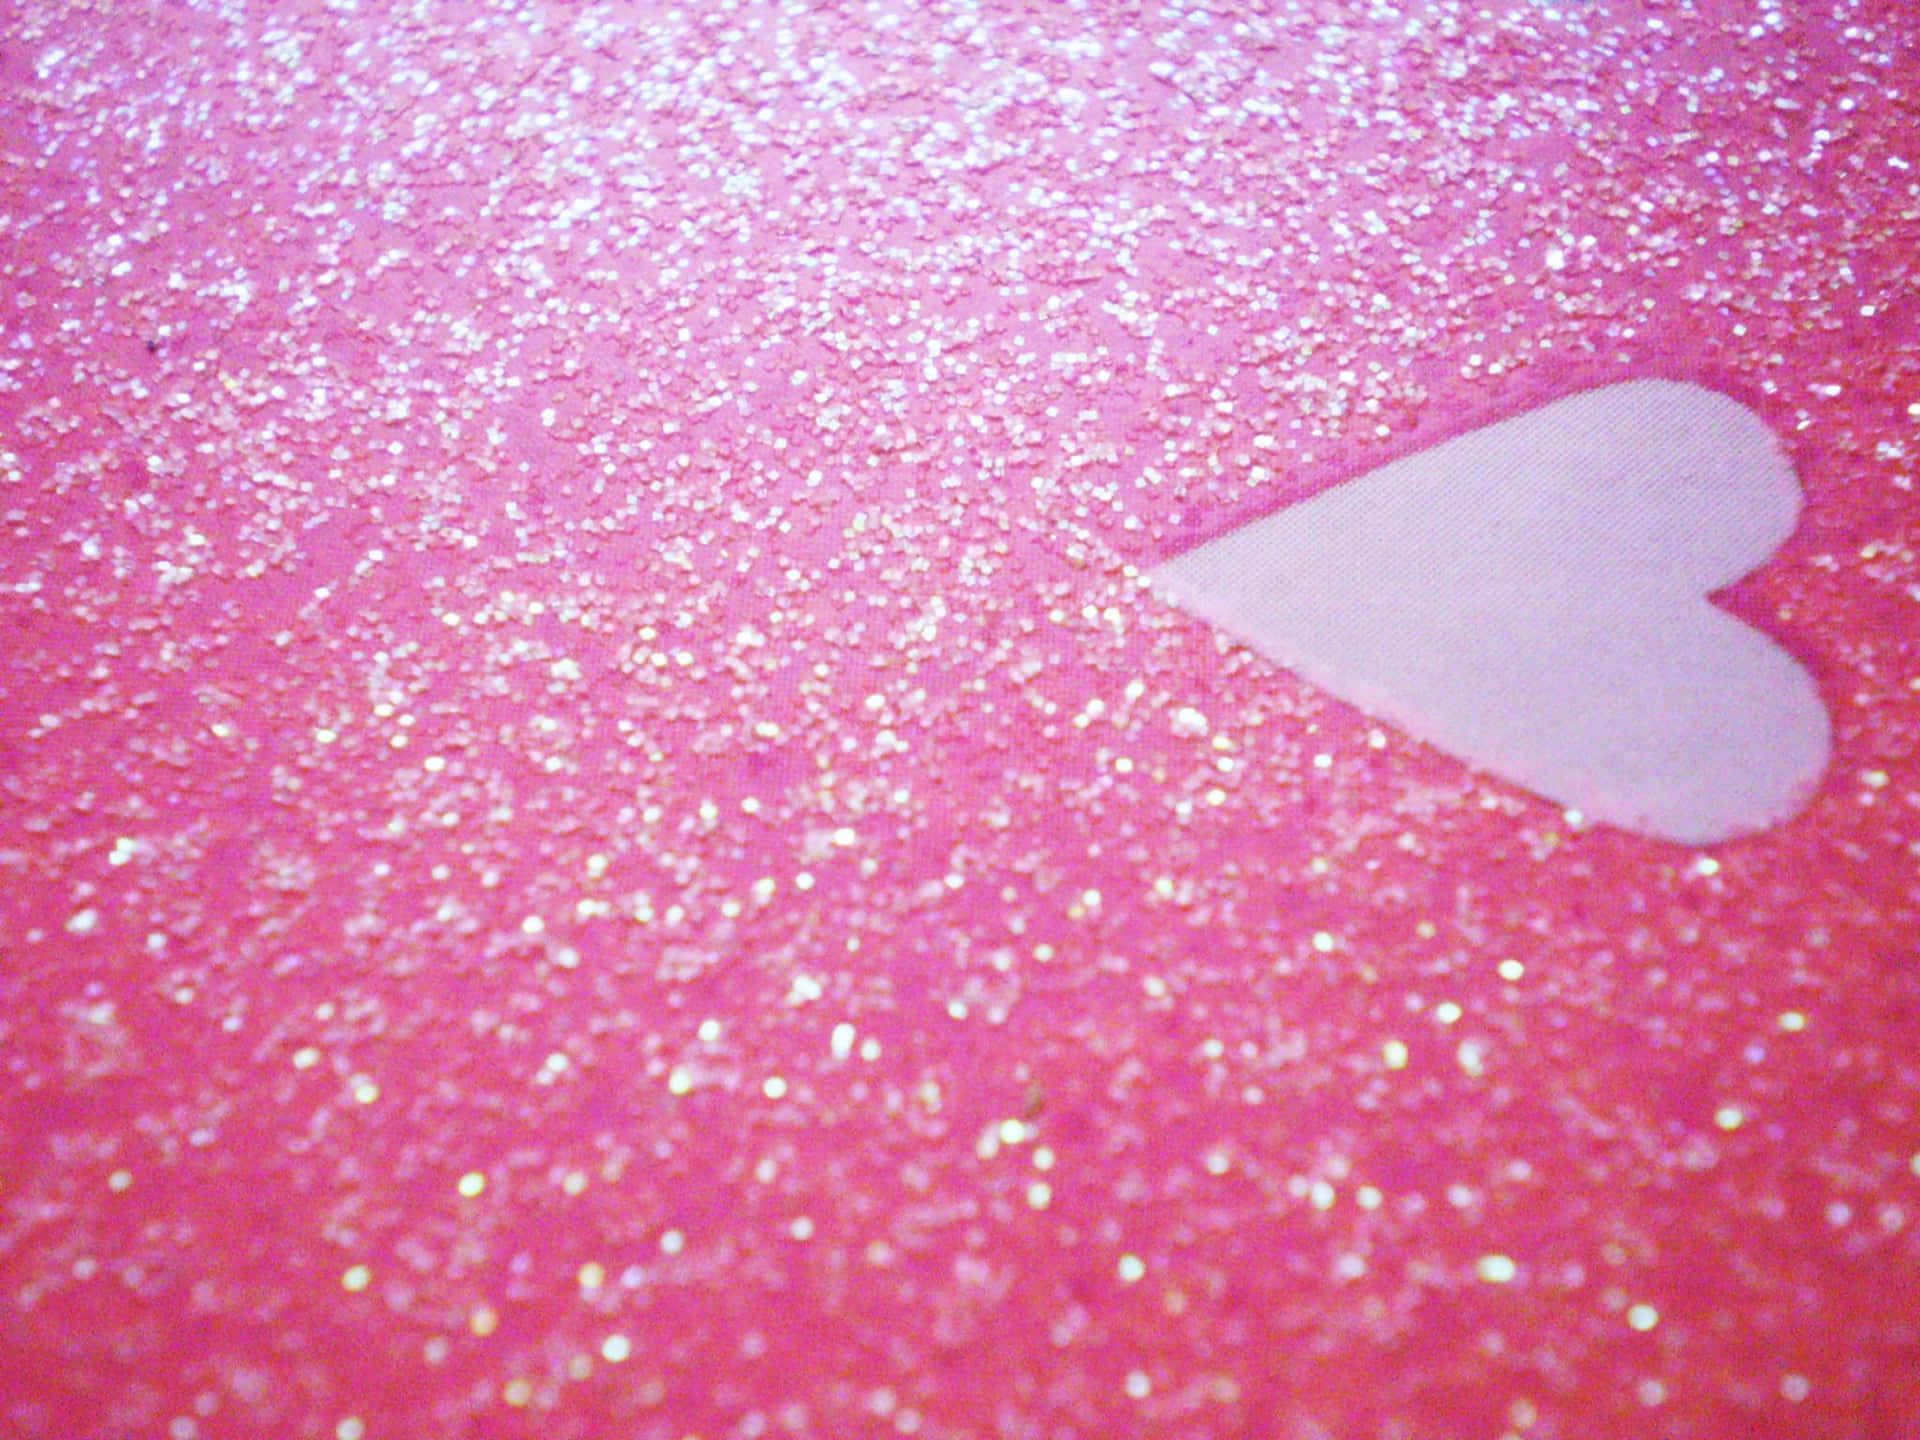 Einglitzerndes Pinkfarbenes Herz Erweckt Freude Und Funkelt Vor Begeisterung. Wallpaper